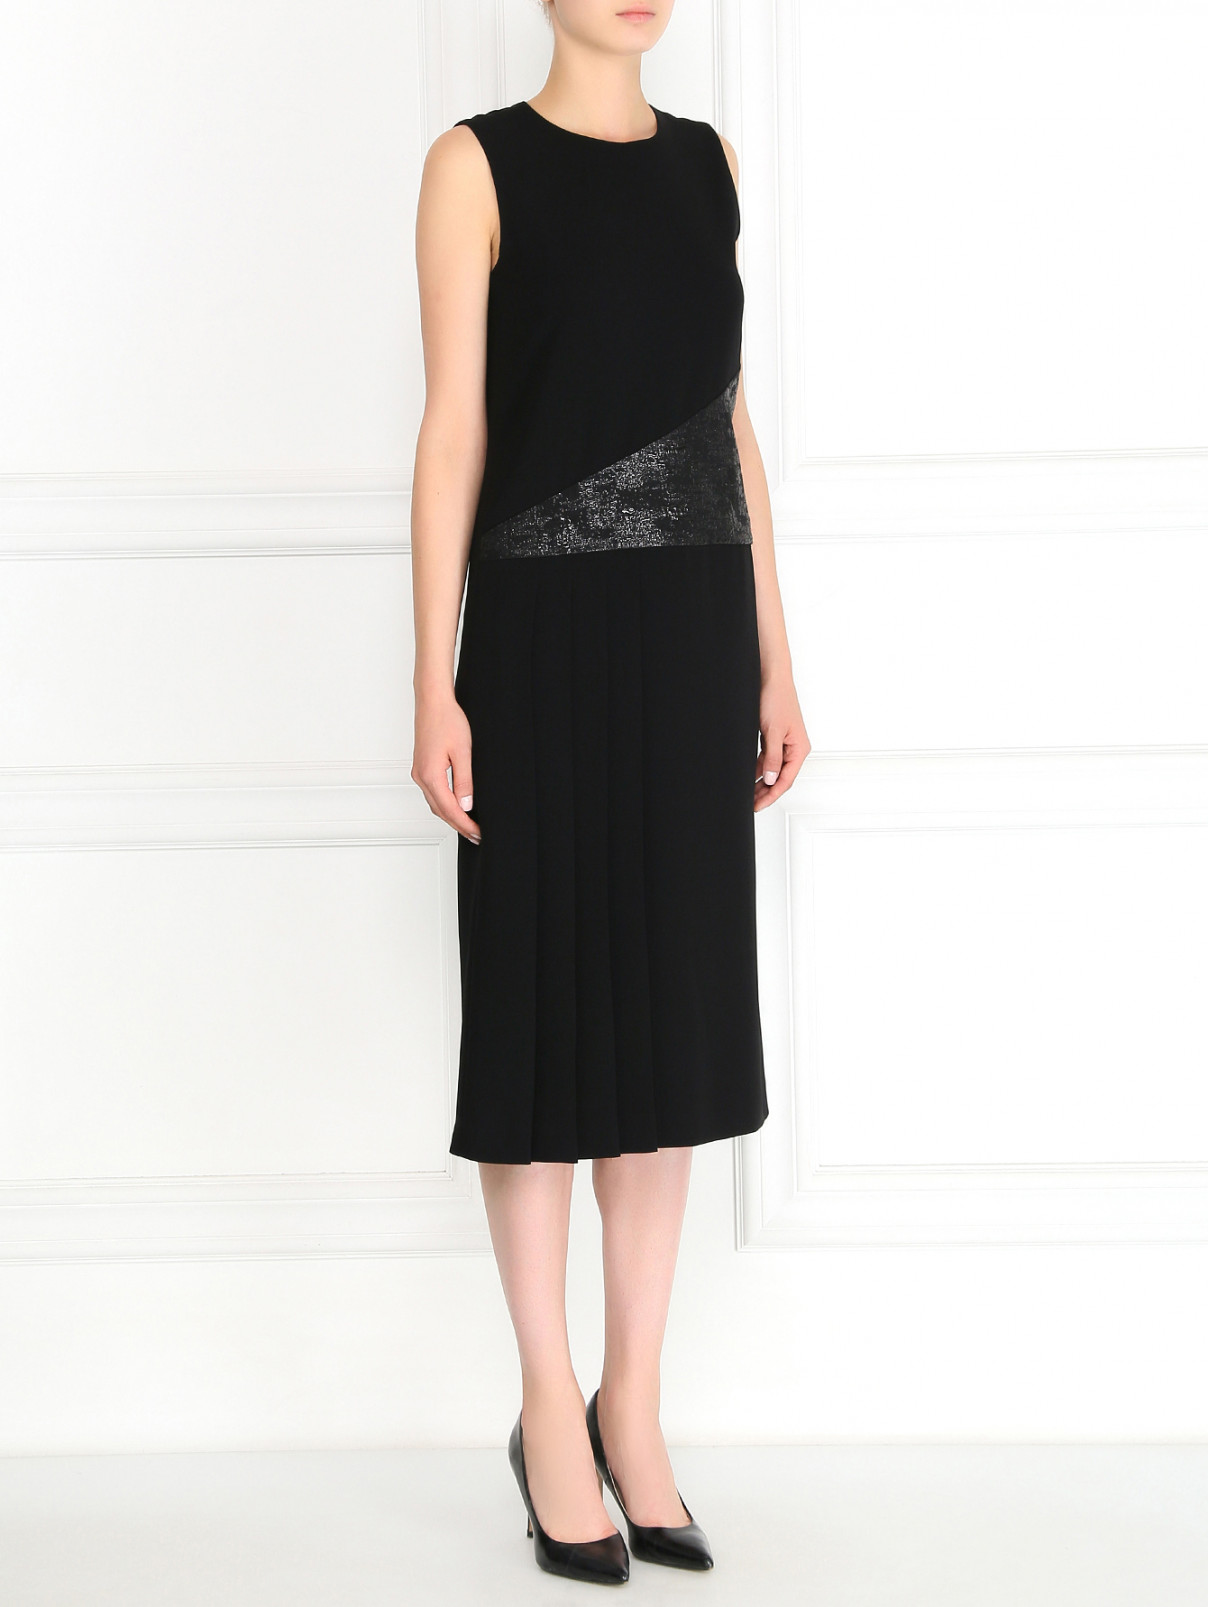 Платье-миди с плиссированной вставкой Max Mara Pianoforte  –  Модель Общий вид  – Цвет:  Черный